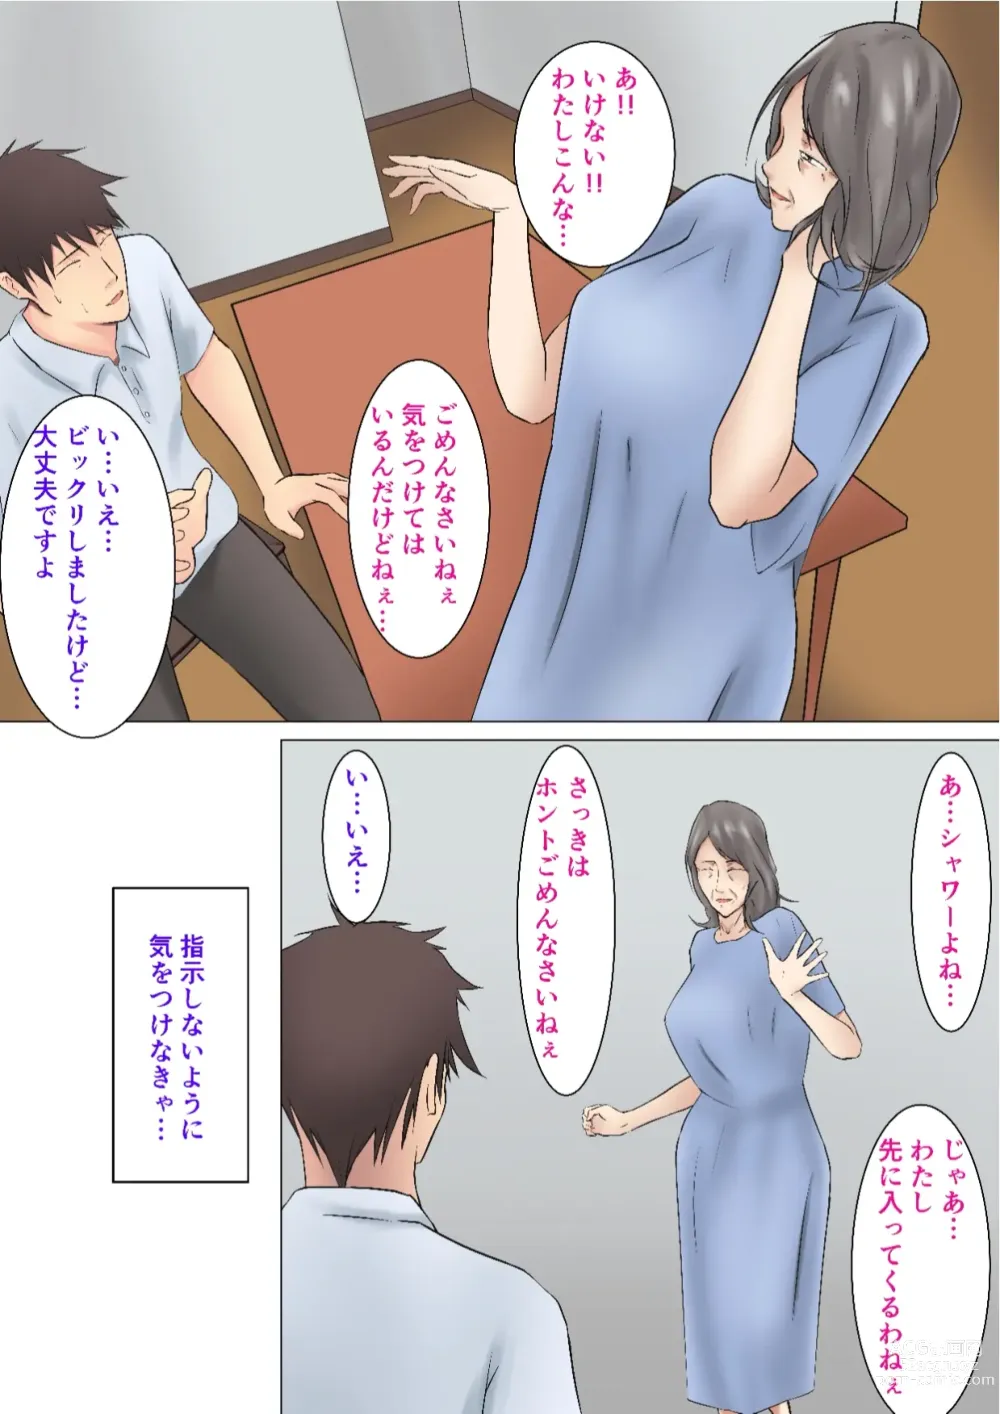 Page 10 of doujinshi Musoji kara Ukerareru Sei Service Delivery Helper